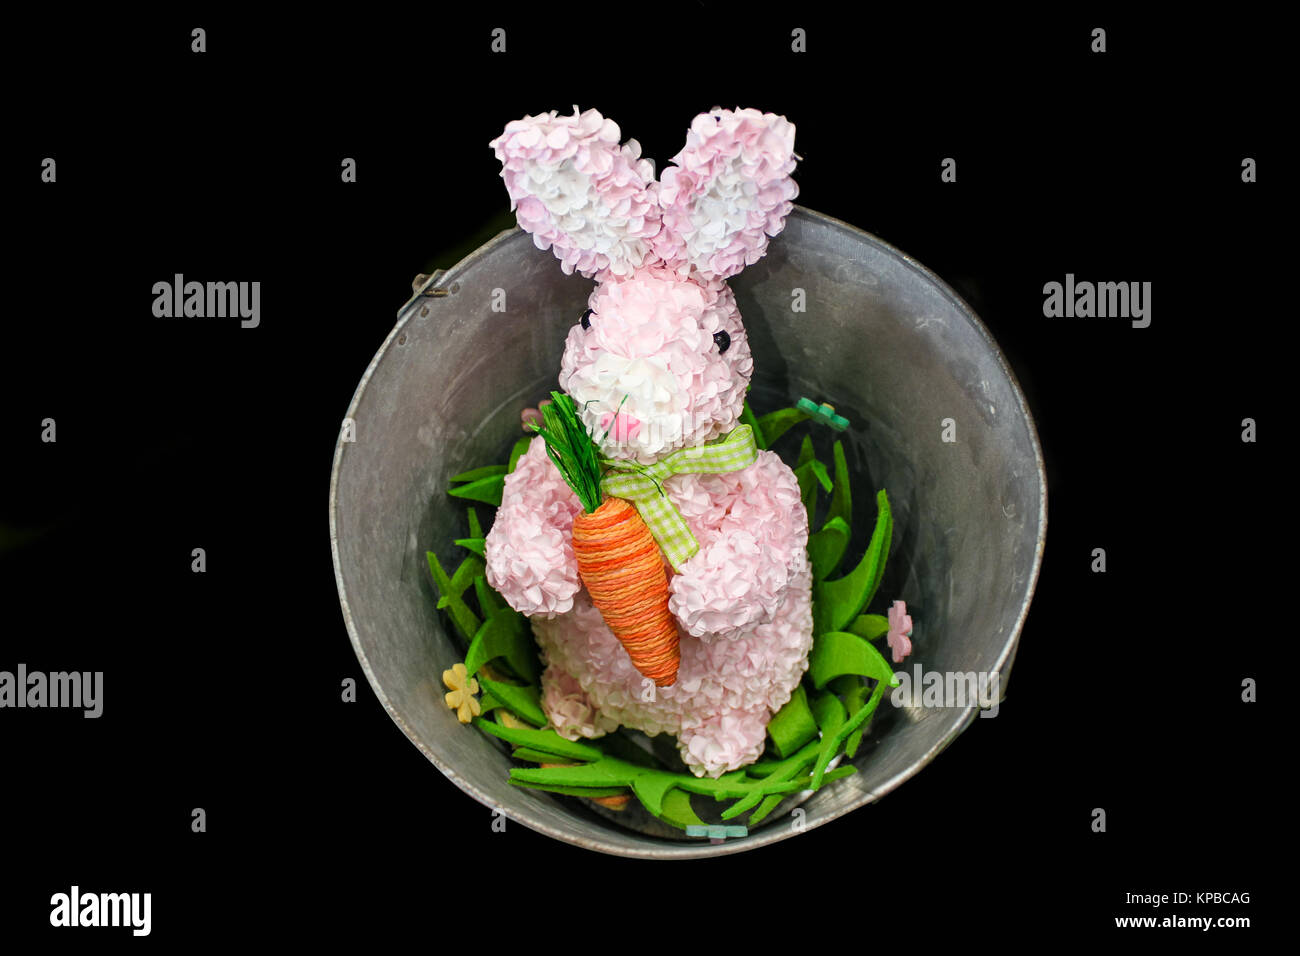 Lapin de Pâques rose fabriqué à partir de pétales de fleurs avec cour carotte dans un seau avec des fleurs isolé sur fond noir Banque D'Images